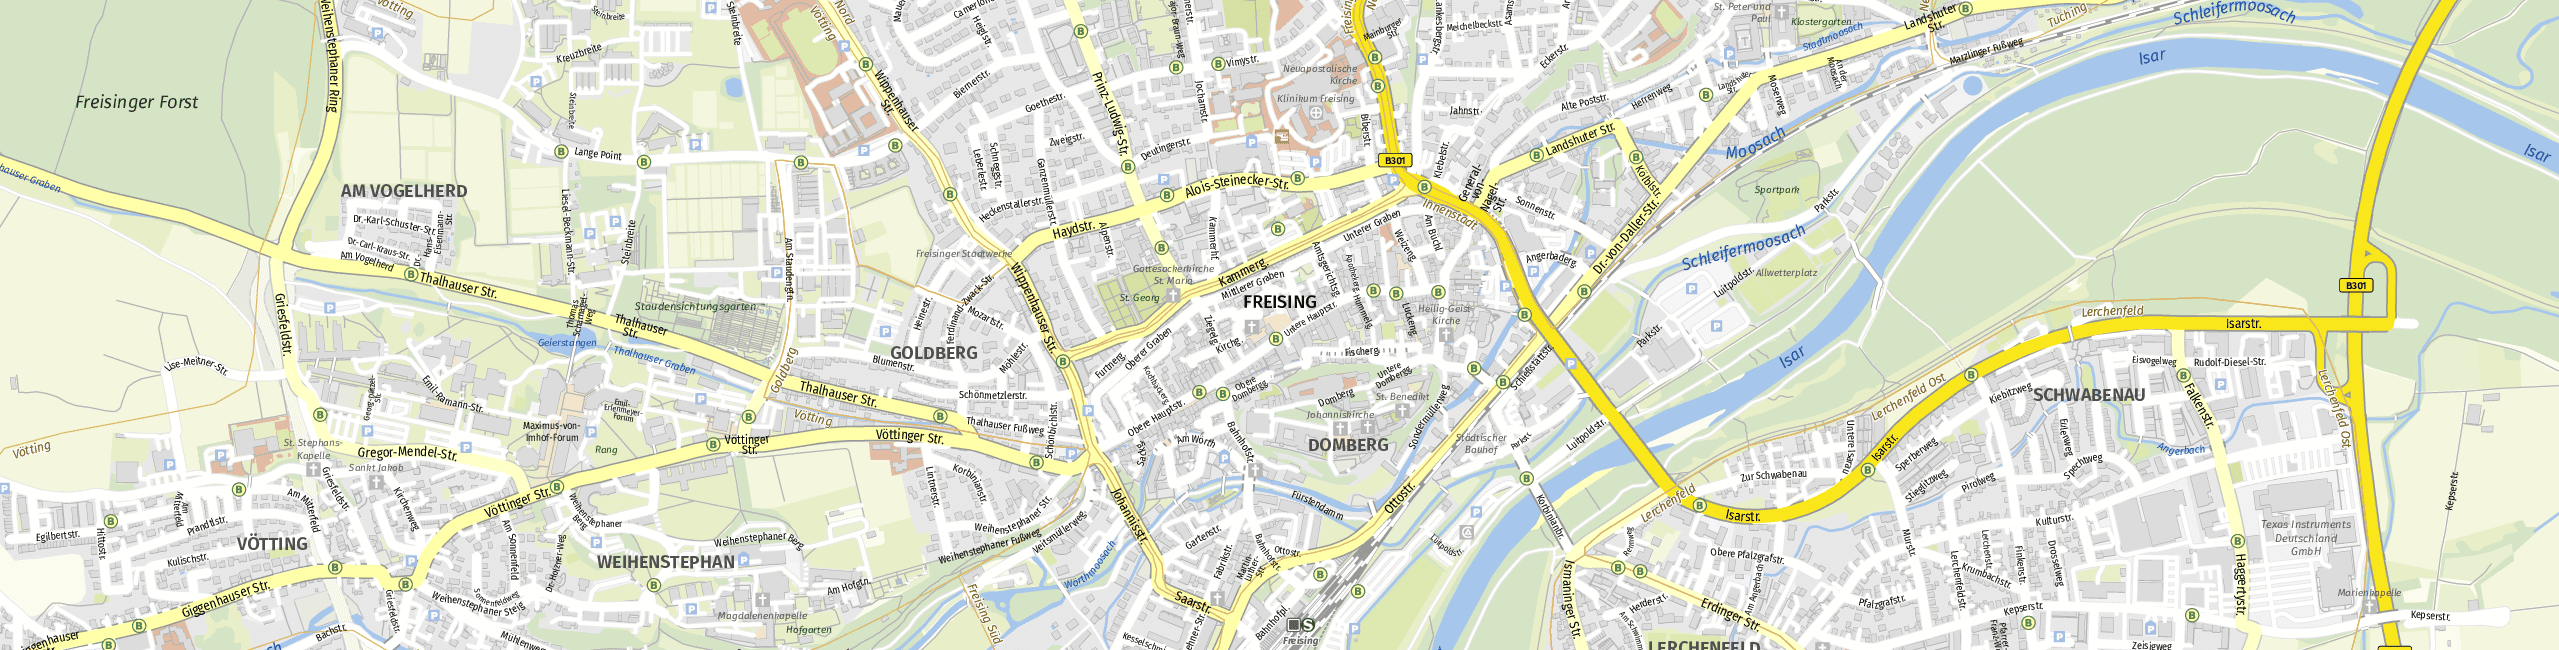 Stadtplan Freising zum Downloaden.